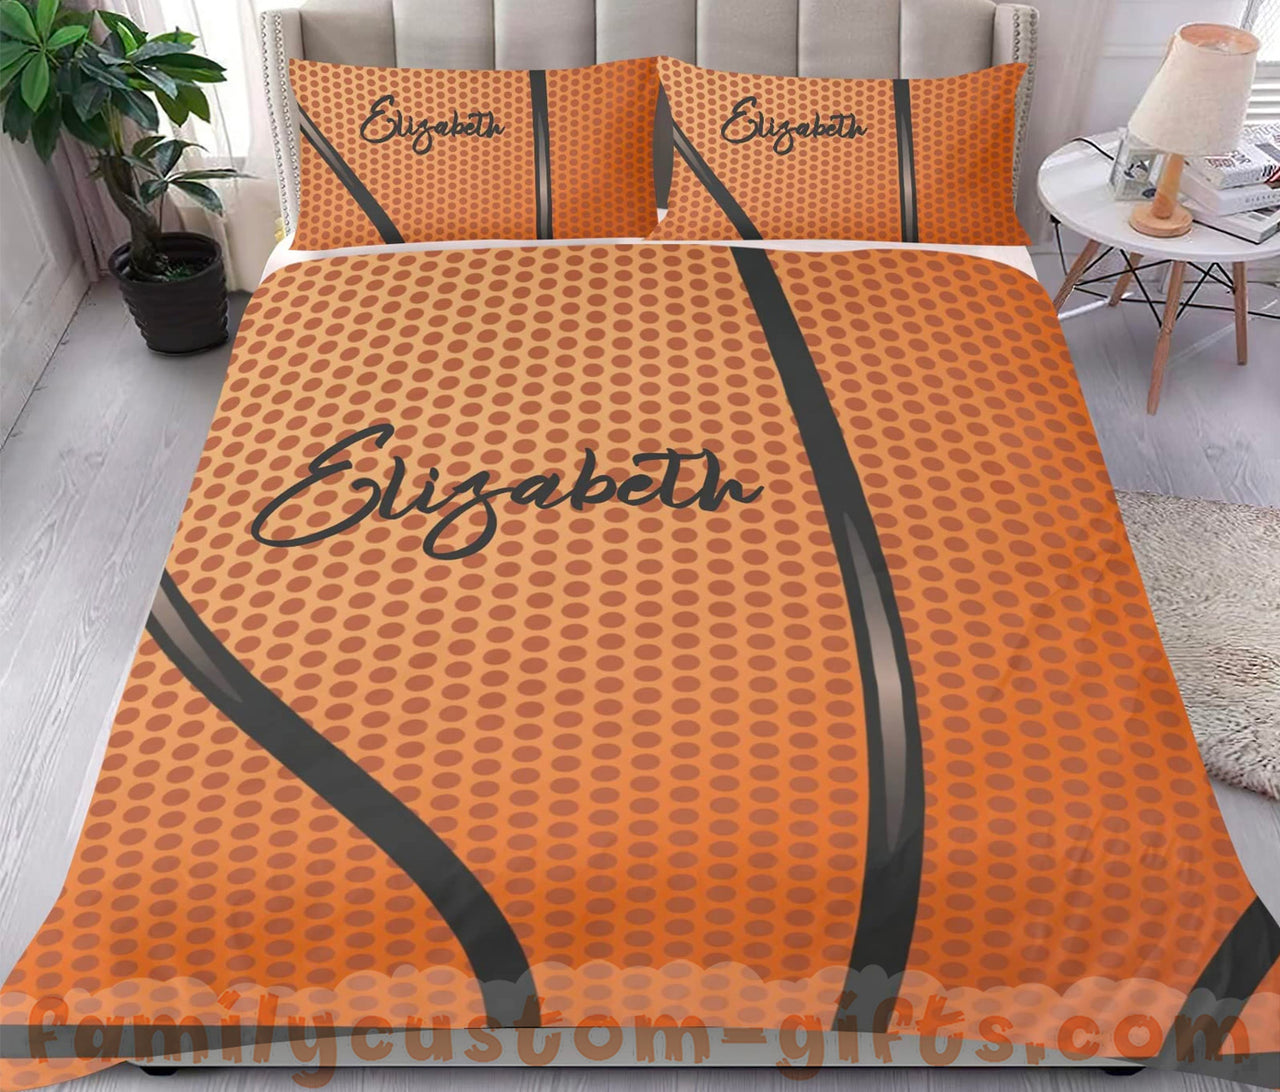 Custom Quilt Sets Sport Basketball Premium Quilt Bedding for Boys Girls Men Women